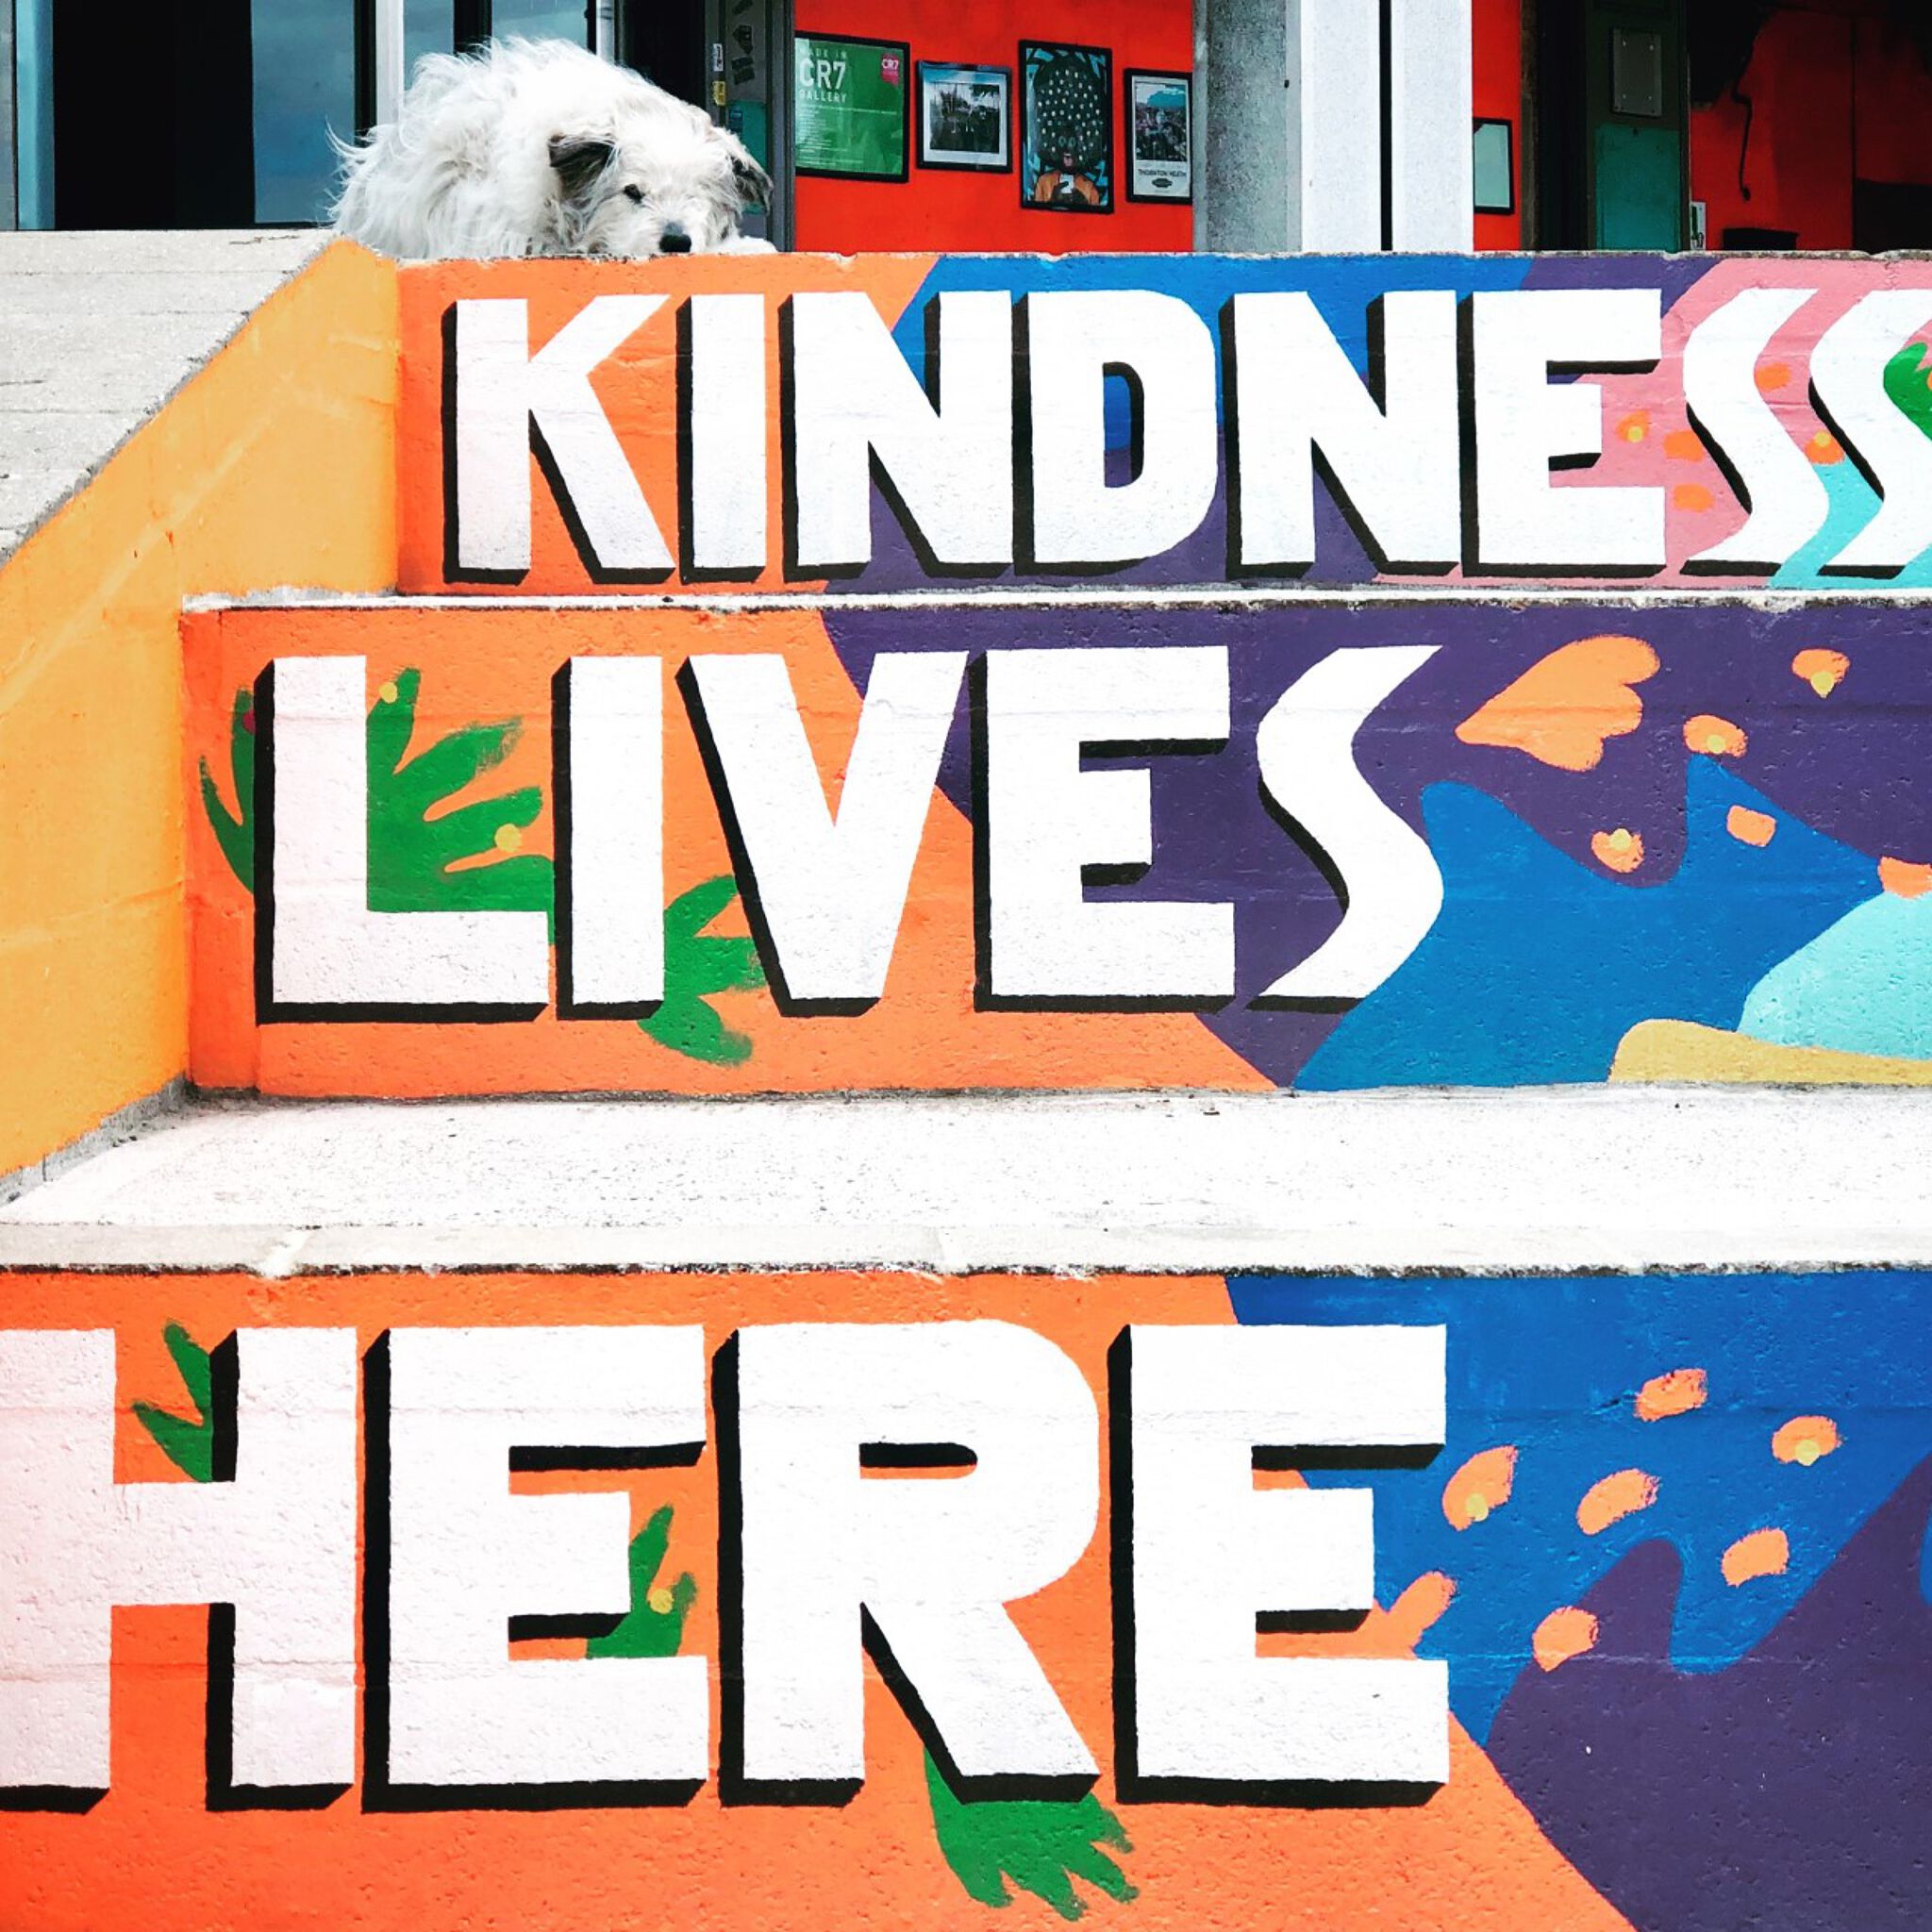 Van Dang, @FreeartUK, https://www.instagram.com/freeartuk/, https://freeart.org.uk/hope-not-hate/&mdash;Kindness Lives Here